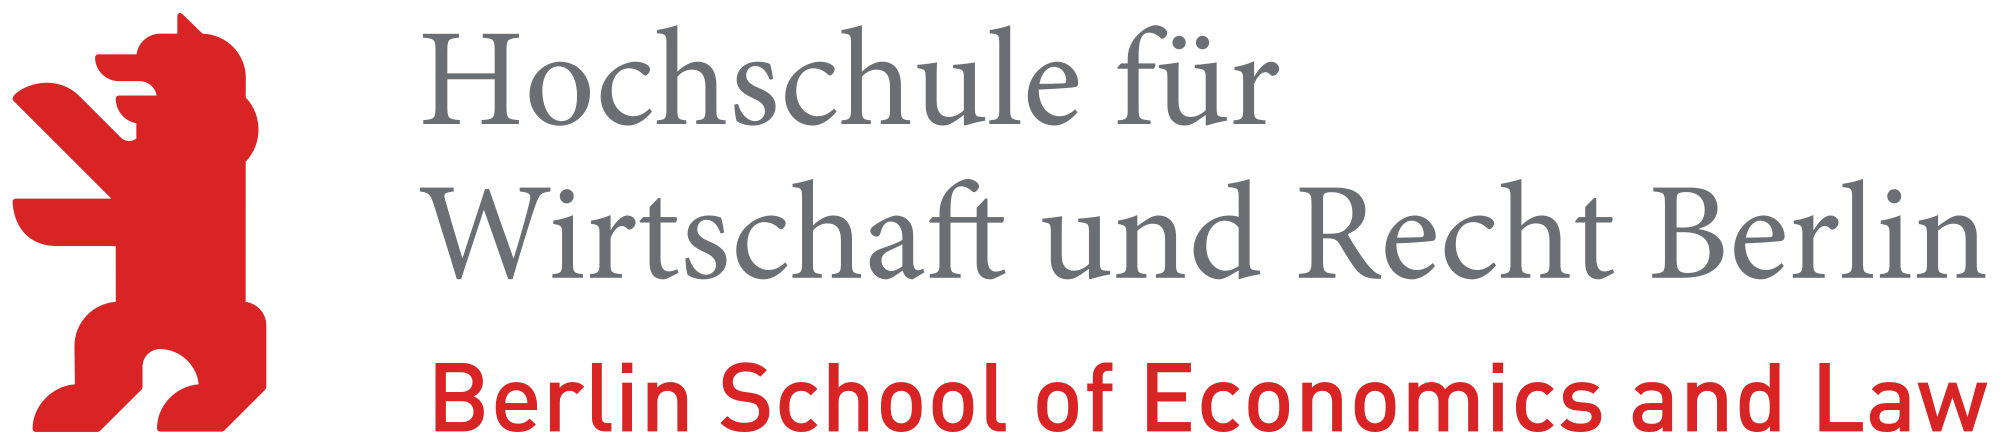 Hochschule Wirtschaft und Recht Berlin Logo